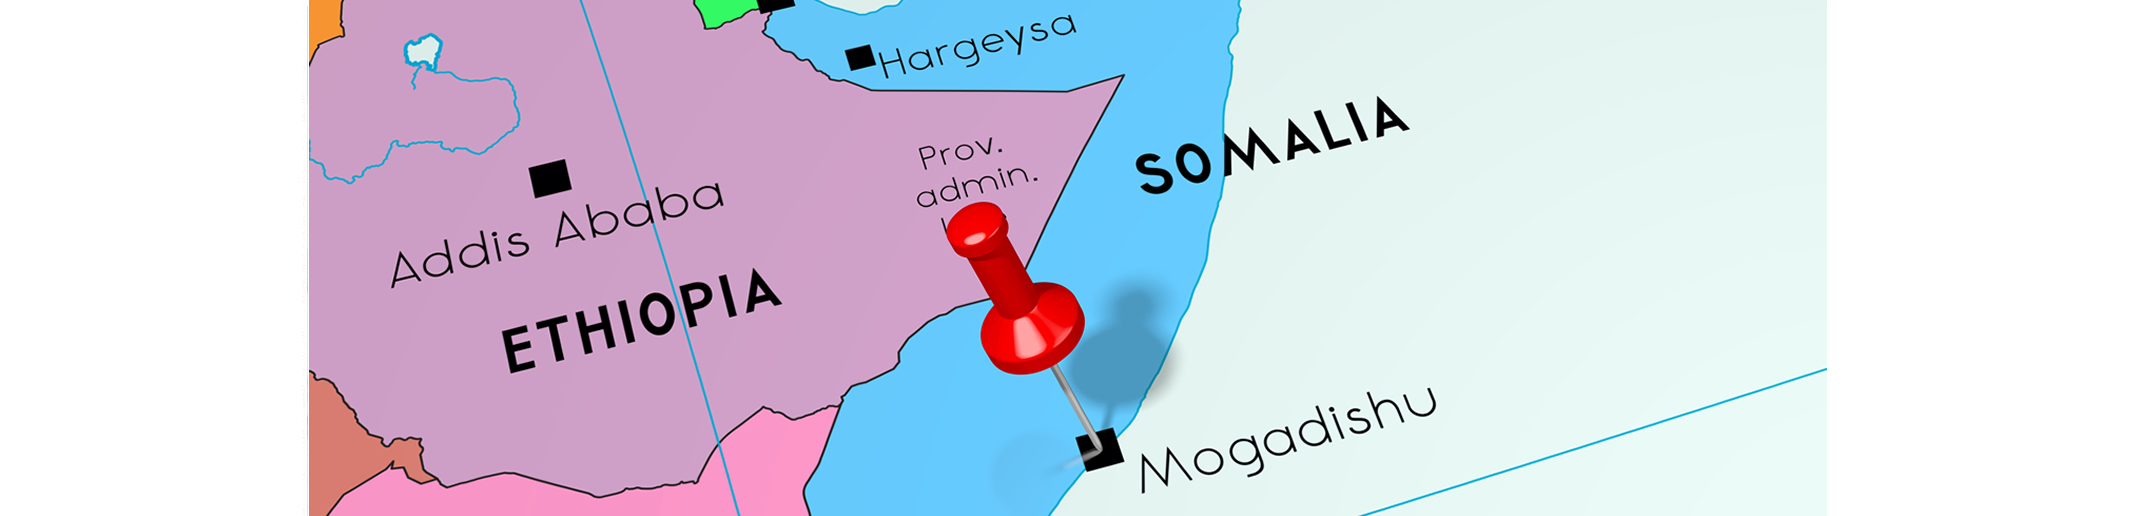 Somalia 31 March 2020